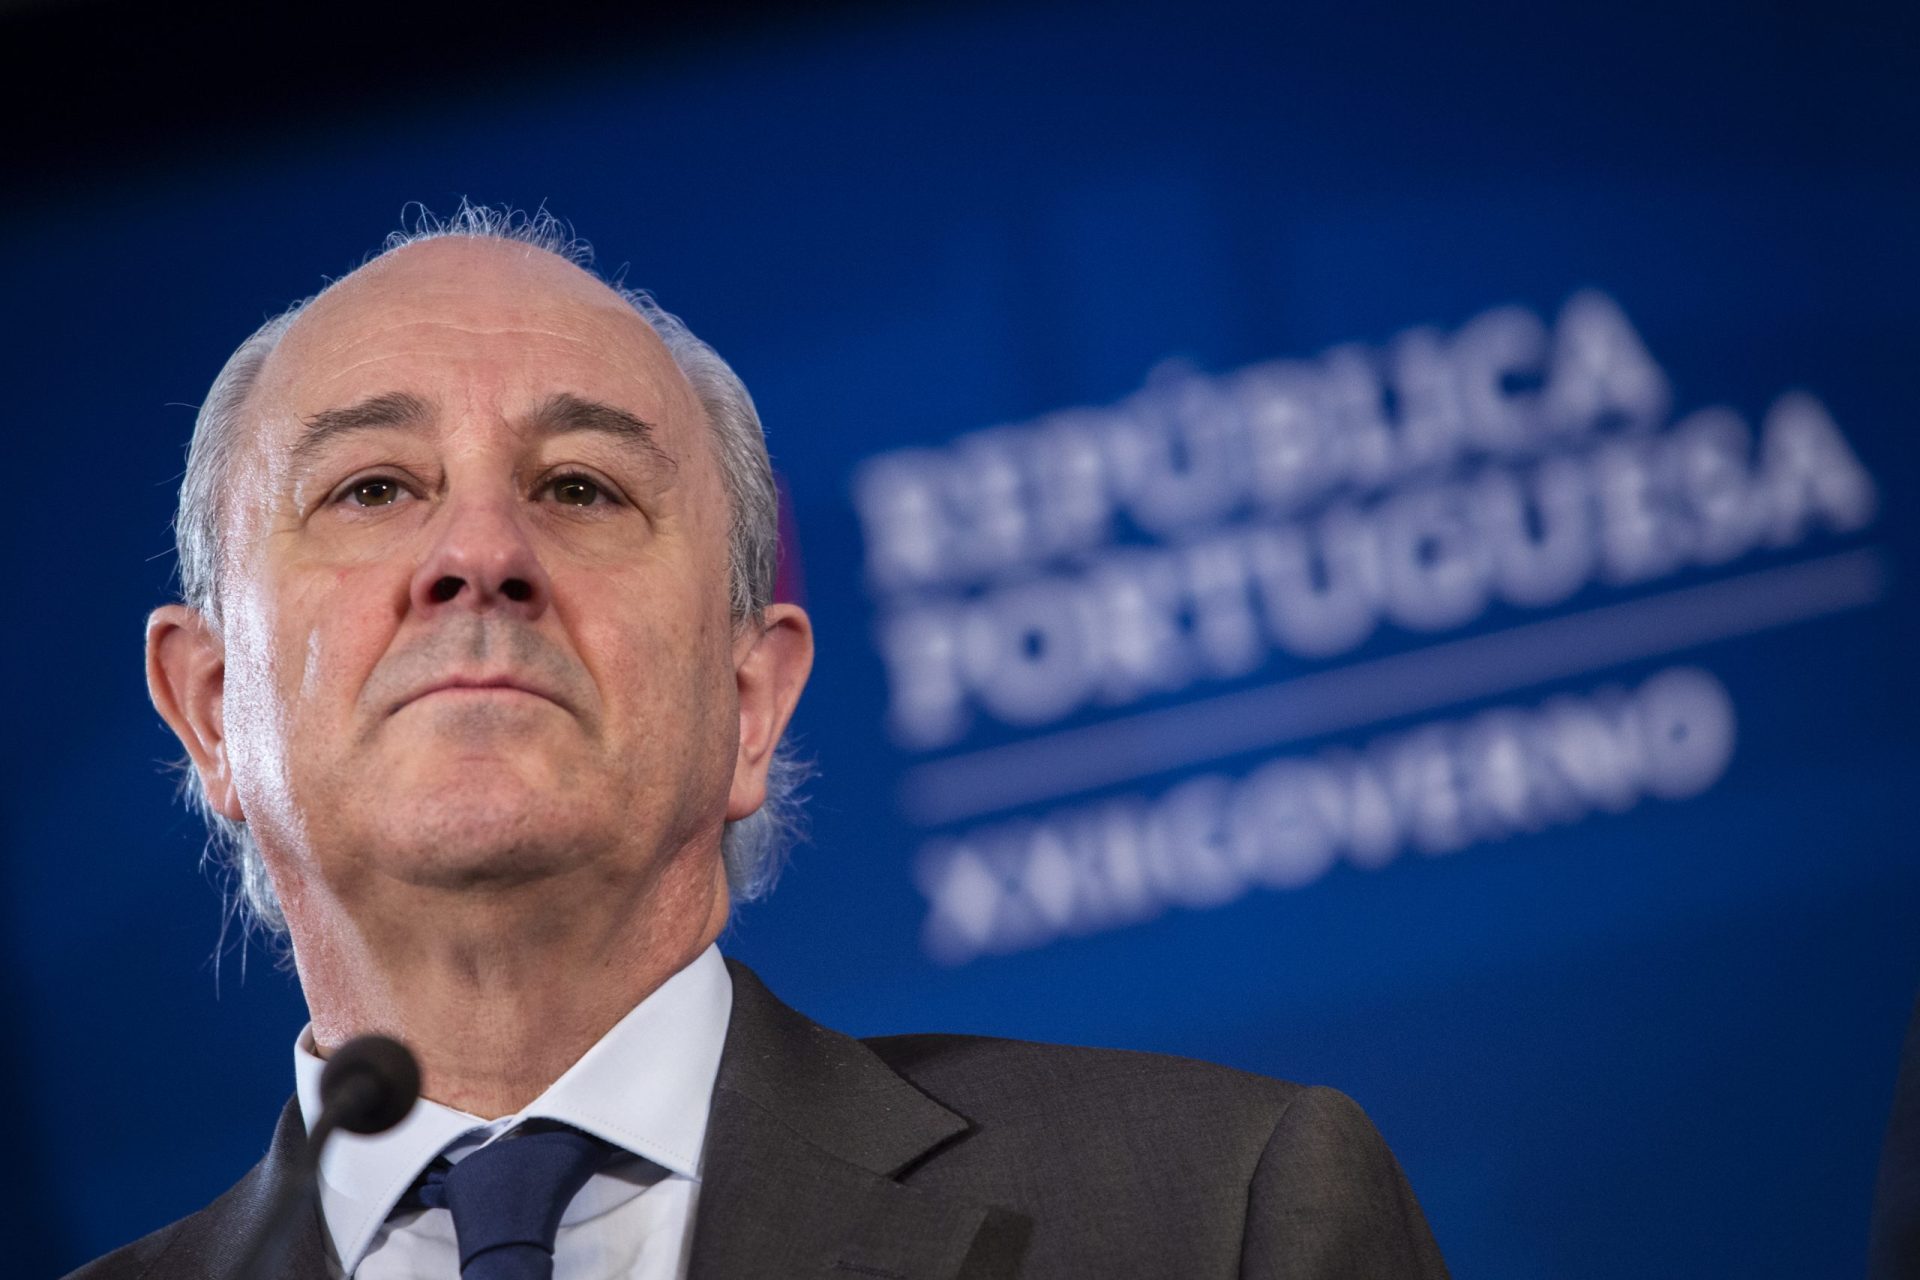 Rio demitia ministra se o governo fosse seu